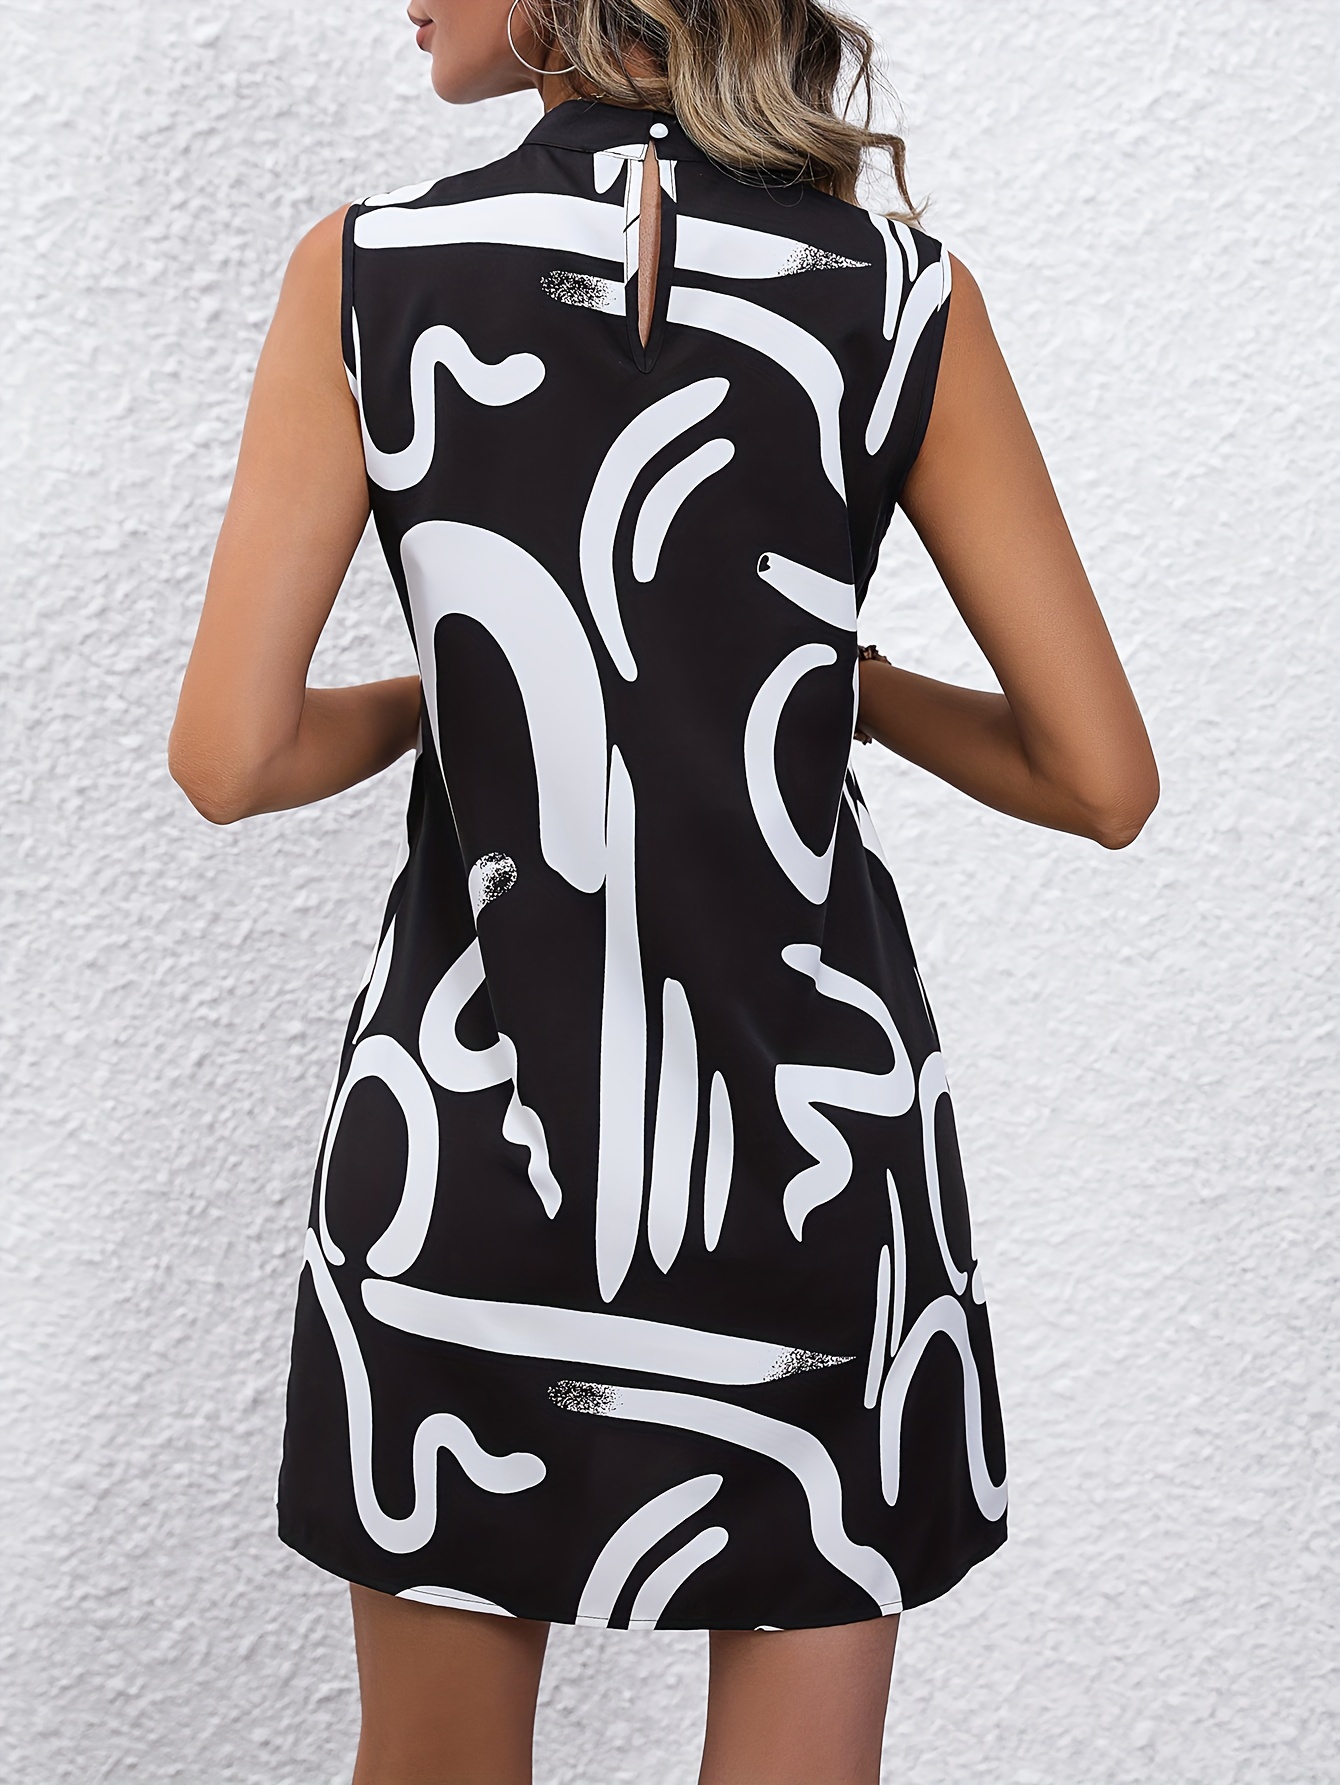 brush print mock neck dress sleeveless dress for spring summer womens clothing details 16